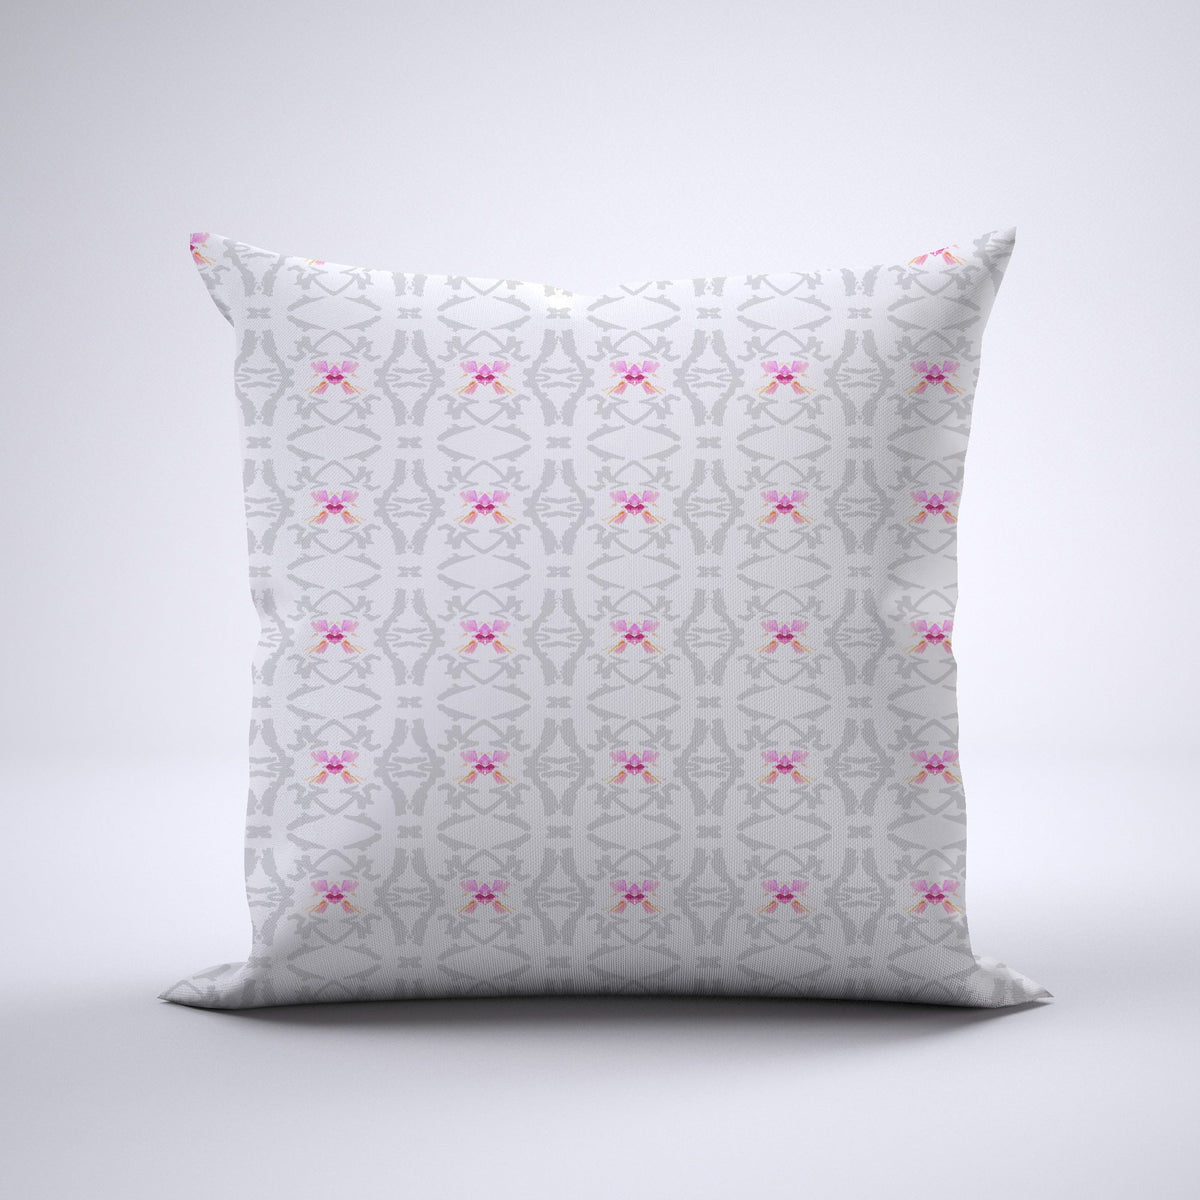 Throw Pillow - Flutter Pink Monarch Bedding Collections, Pillows, Throw Pillows MWW 